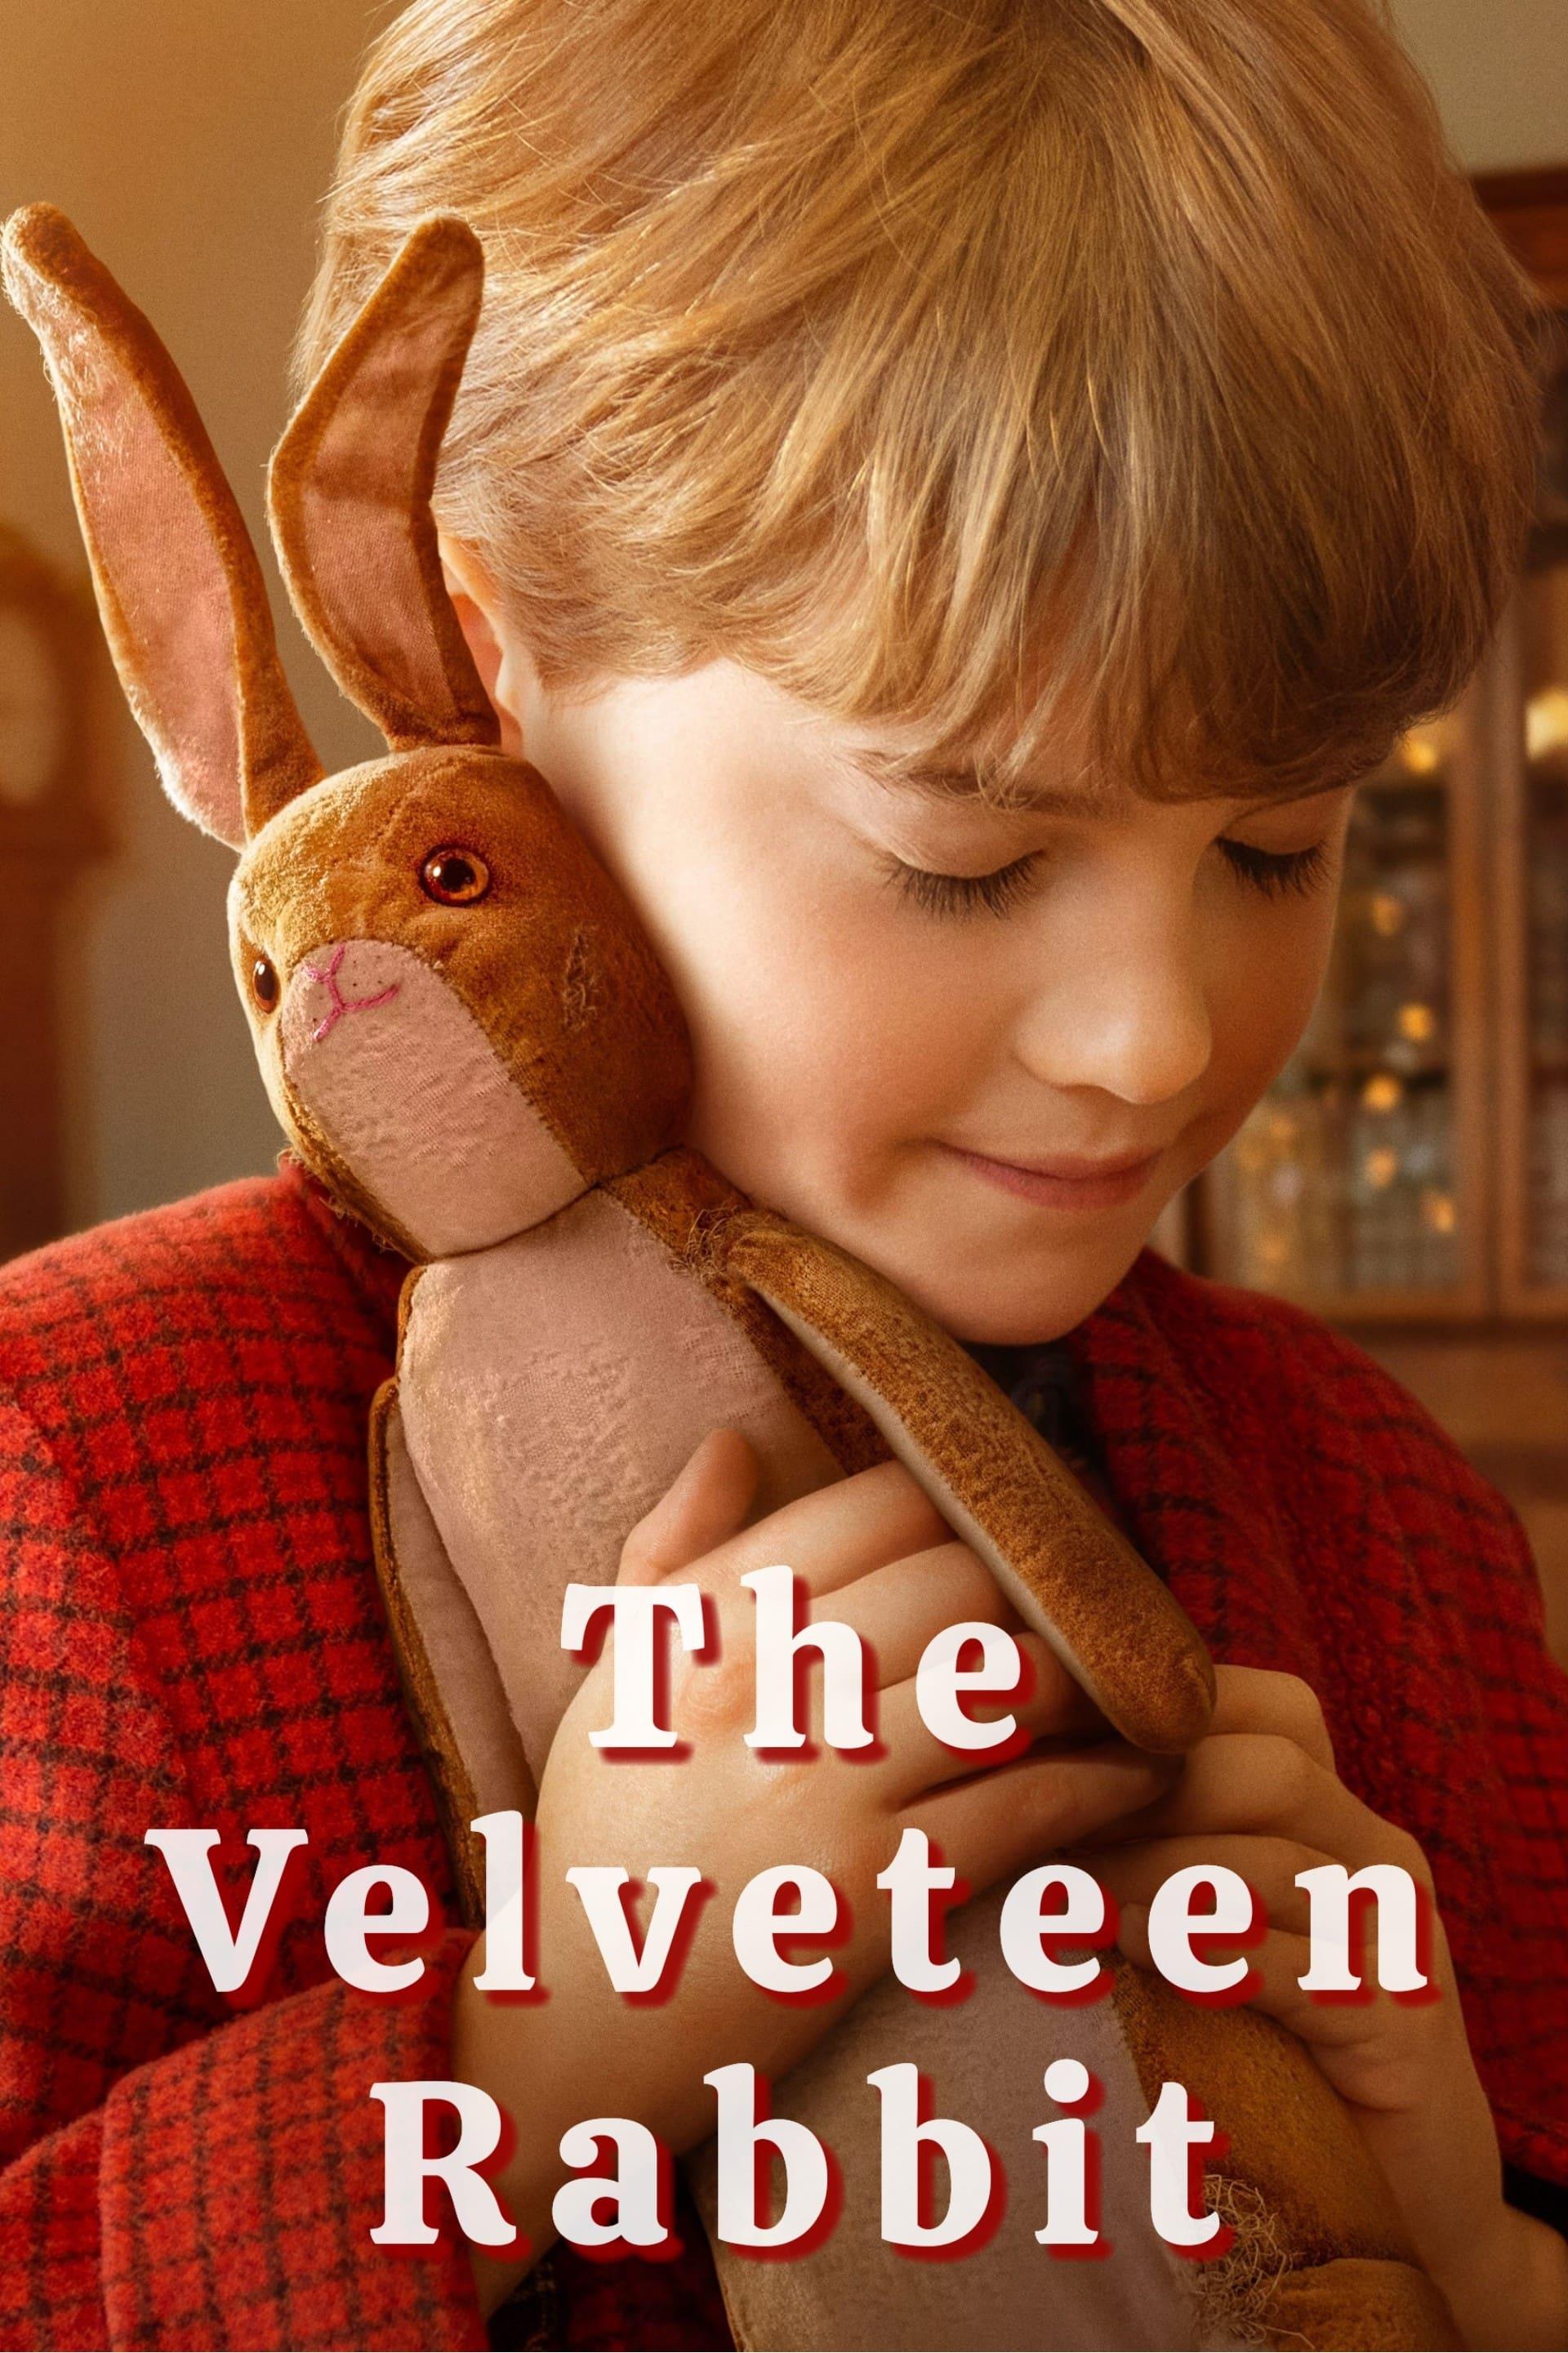 The Velveteen Rabbit poster